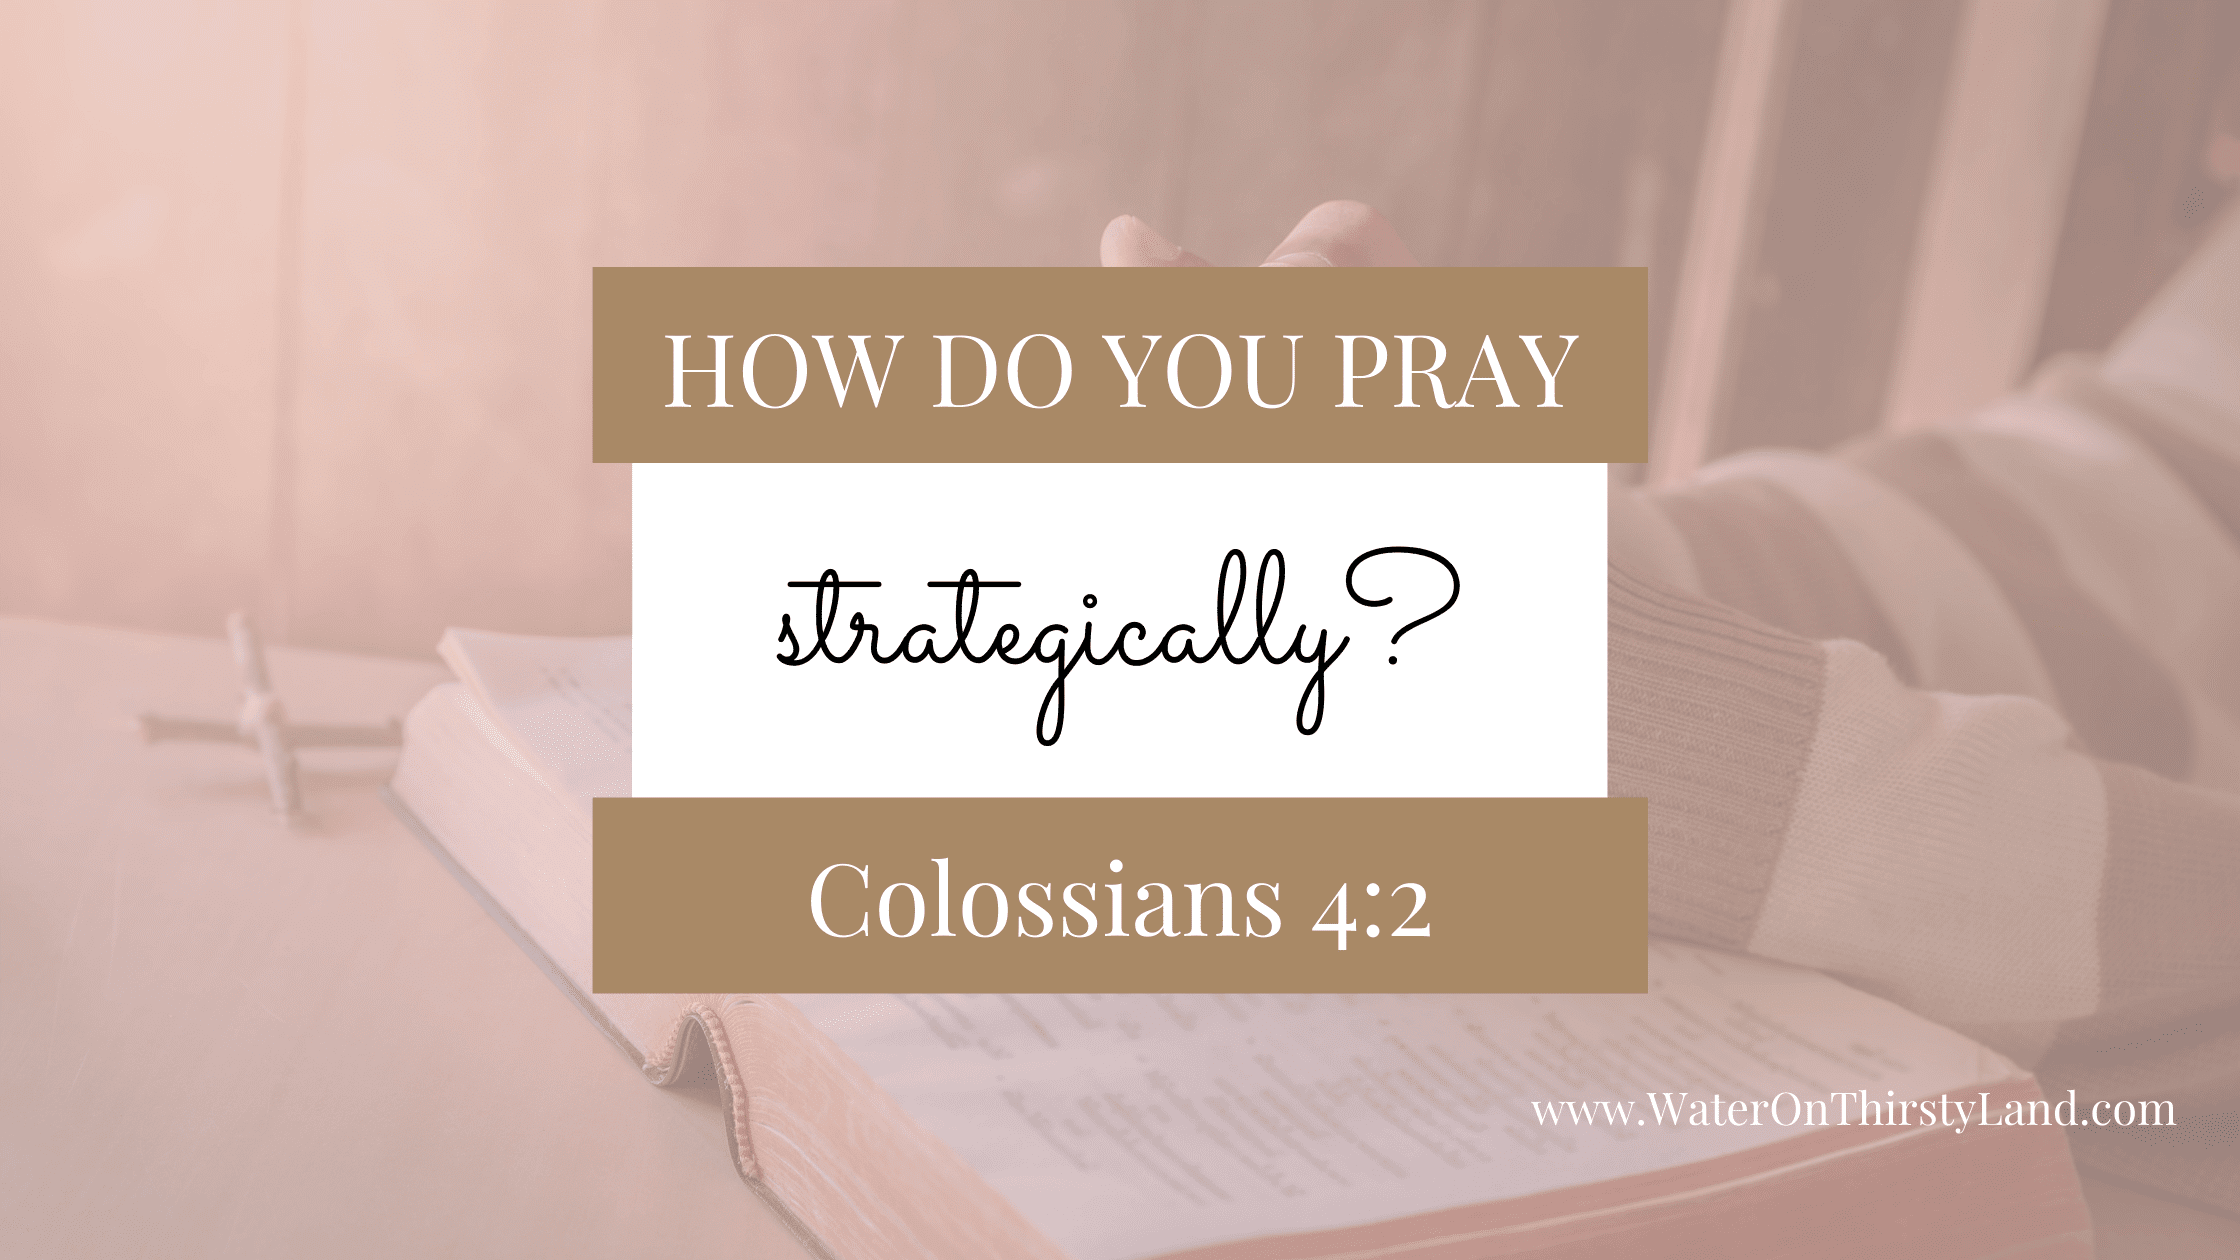 How do you Pray Strategically